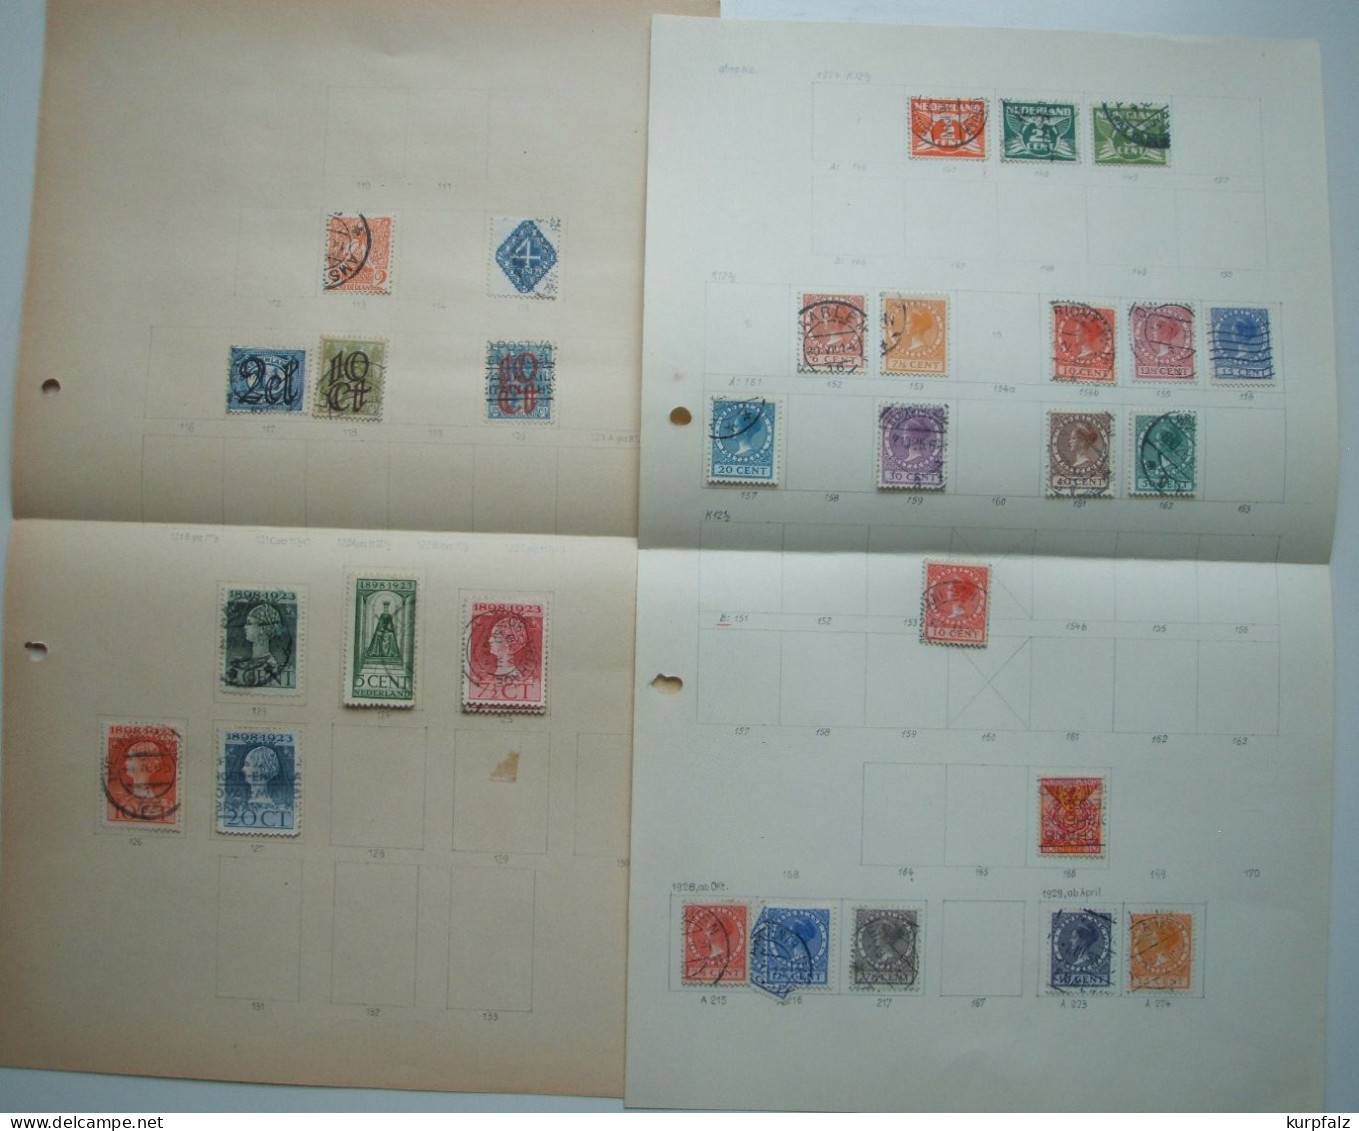 Niederlande - Briefmarken-Konvolut alt + neu, ** + ⊙, alte Blätter + Steckseiten